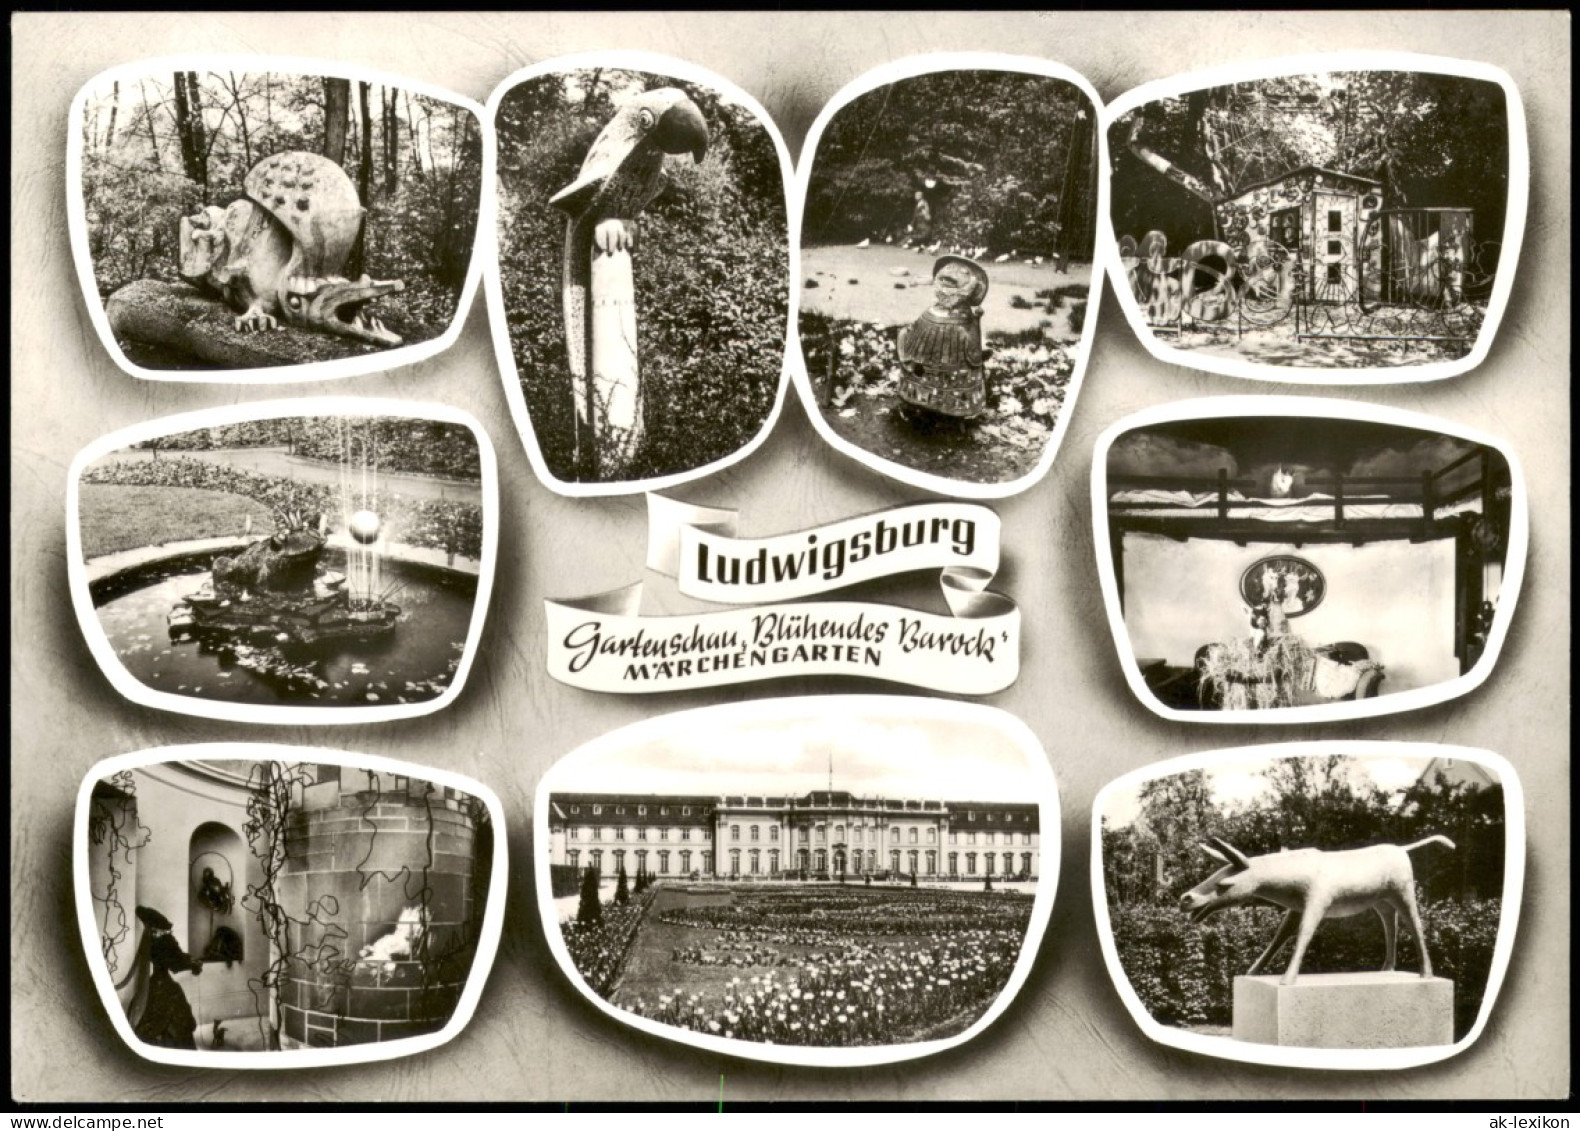 Ansichtskarte Ludwigsburg MÄRCHEN GARTEN Gartenschau Rühendes Barock 1968 - Ludwigsburg